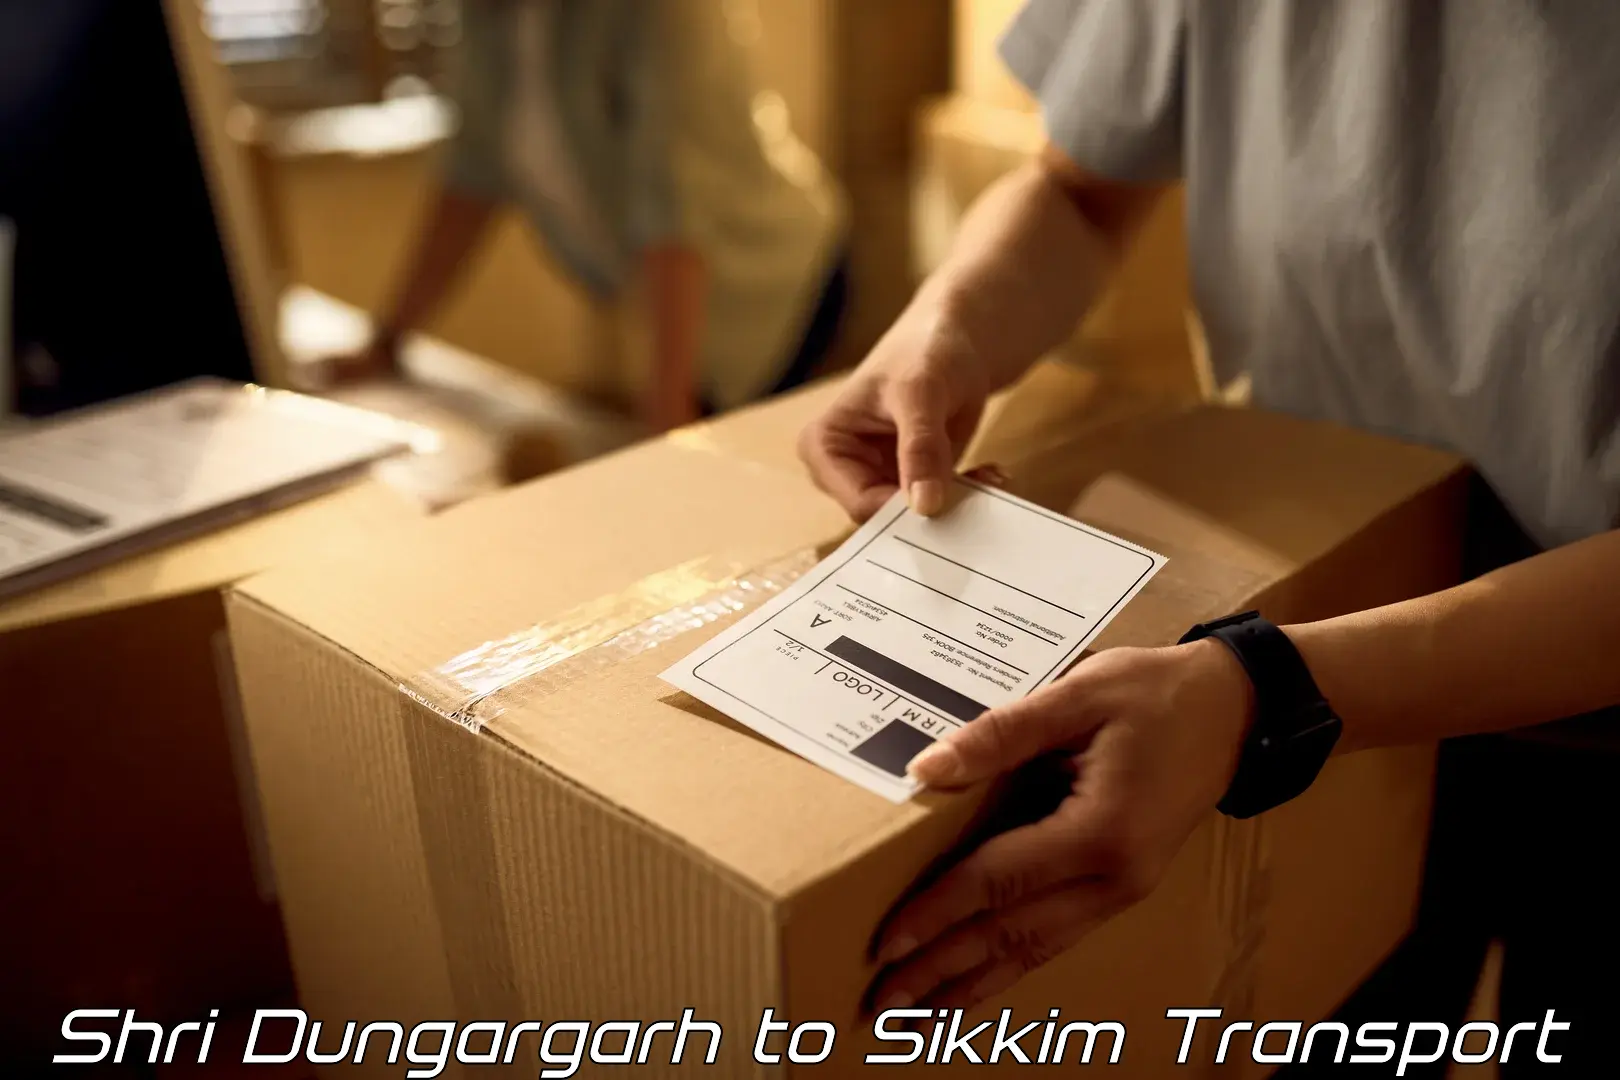 Online transport service Shri Dungargarh to Mangan